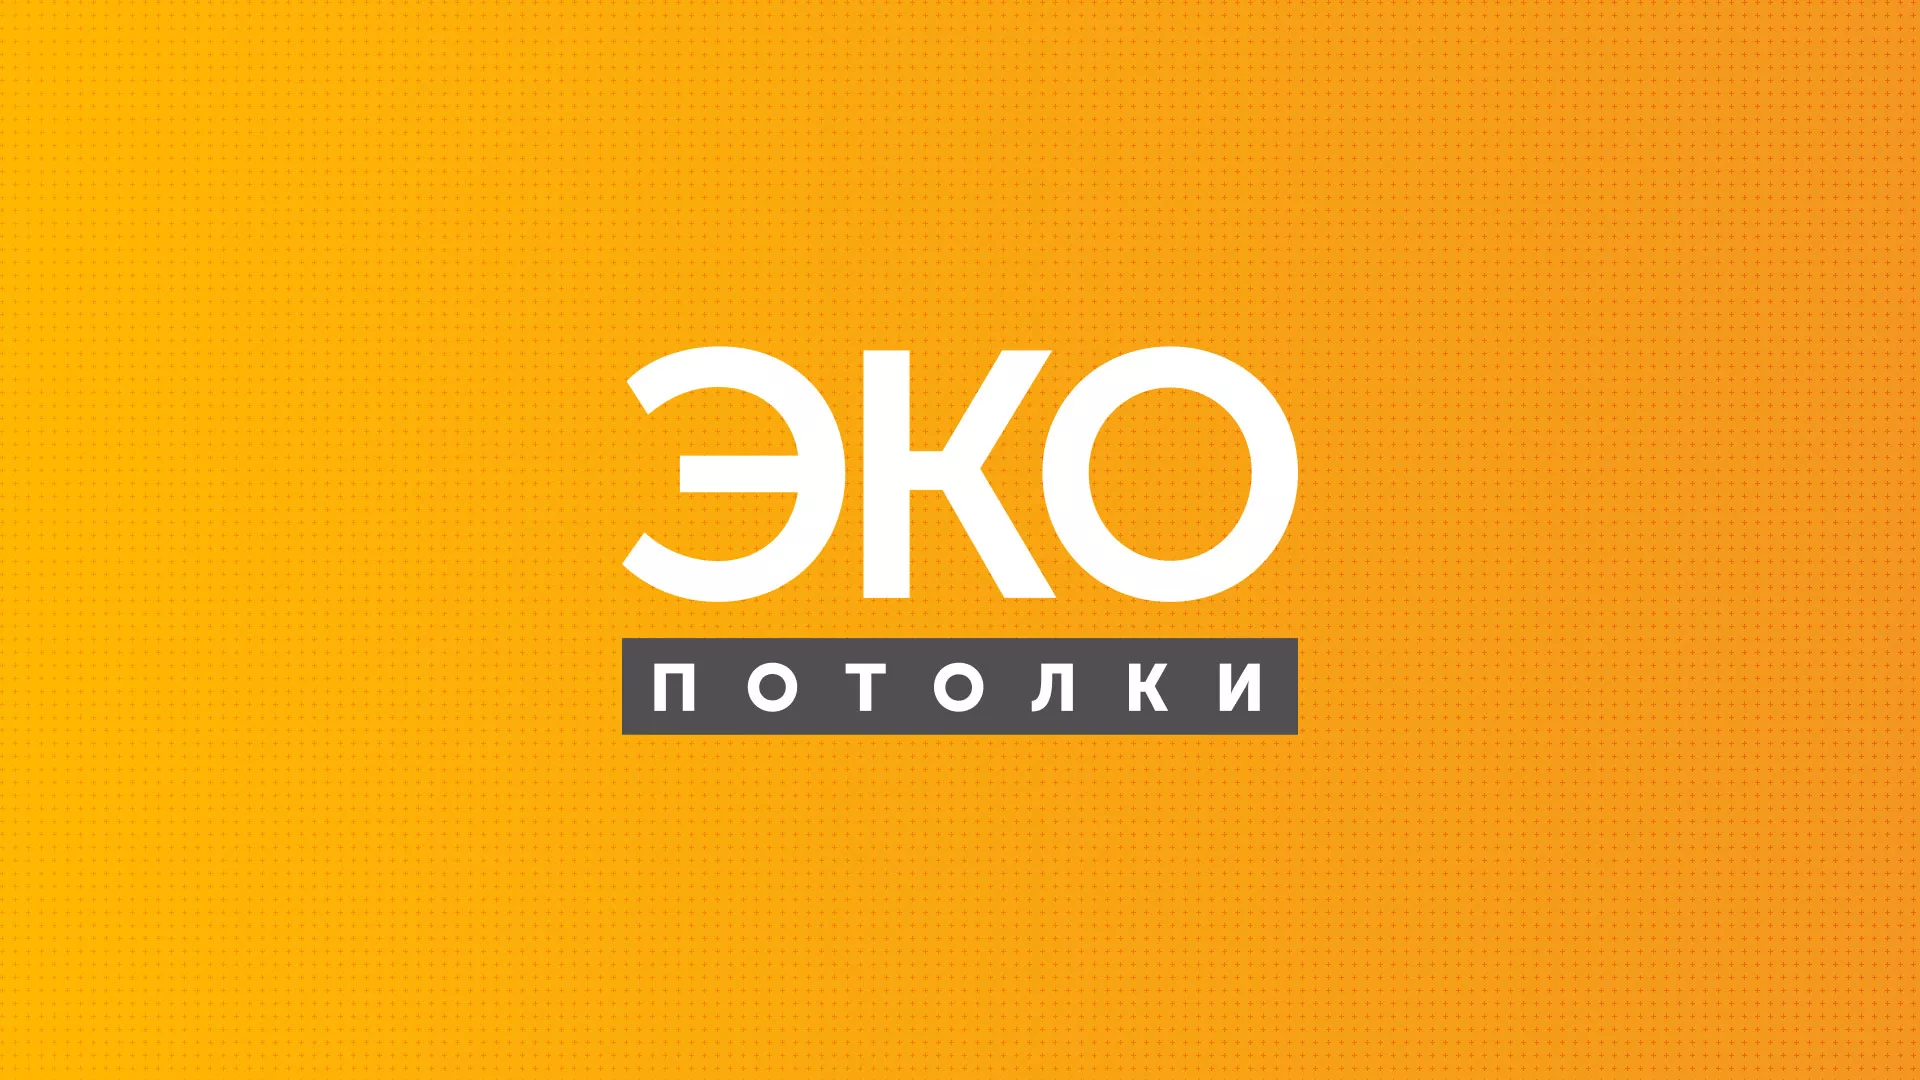 Разработка сайта по натяжным потолкам «Эко Потолки» в Чкаловском